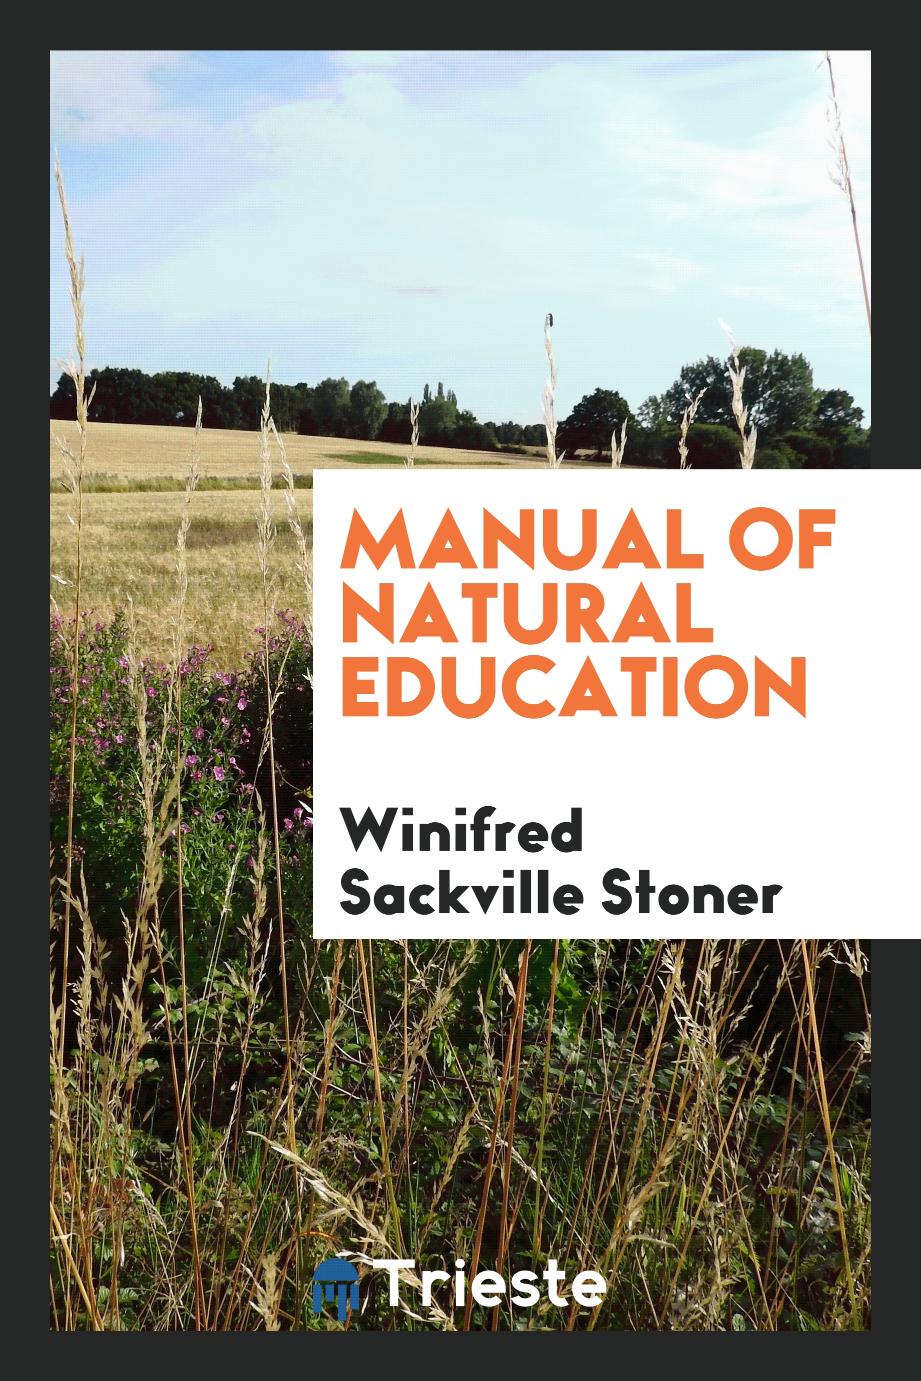 Manual of natural education